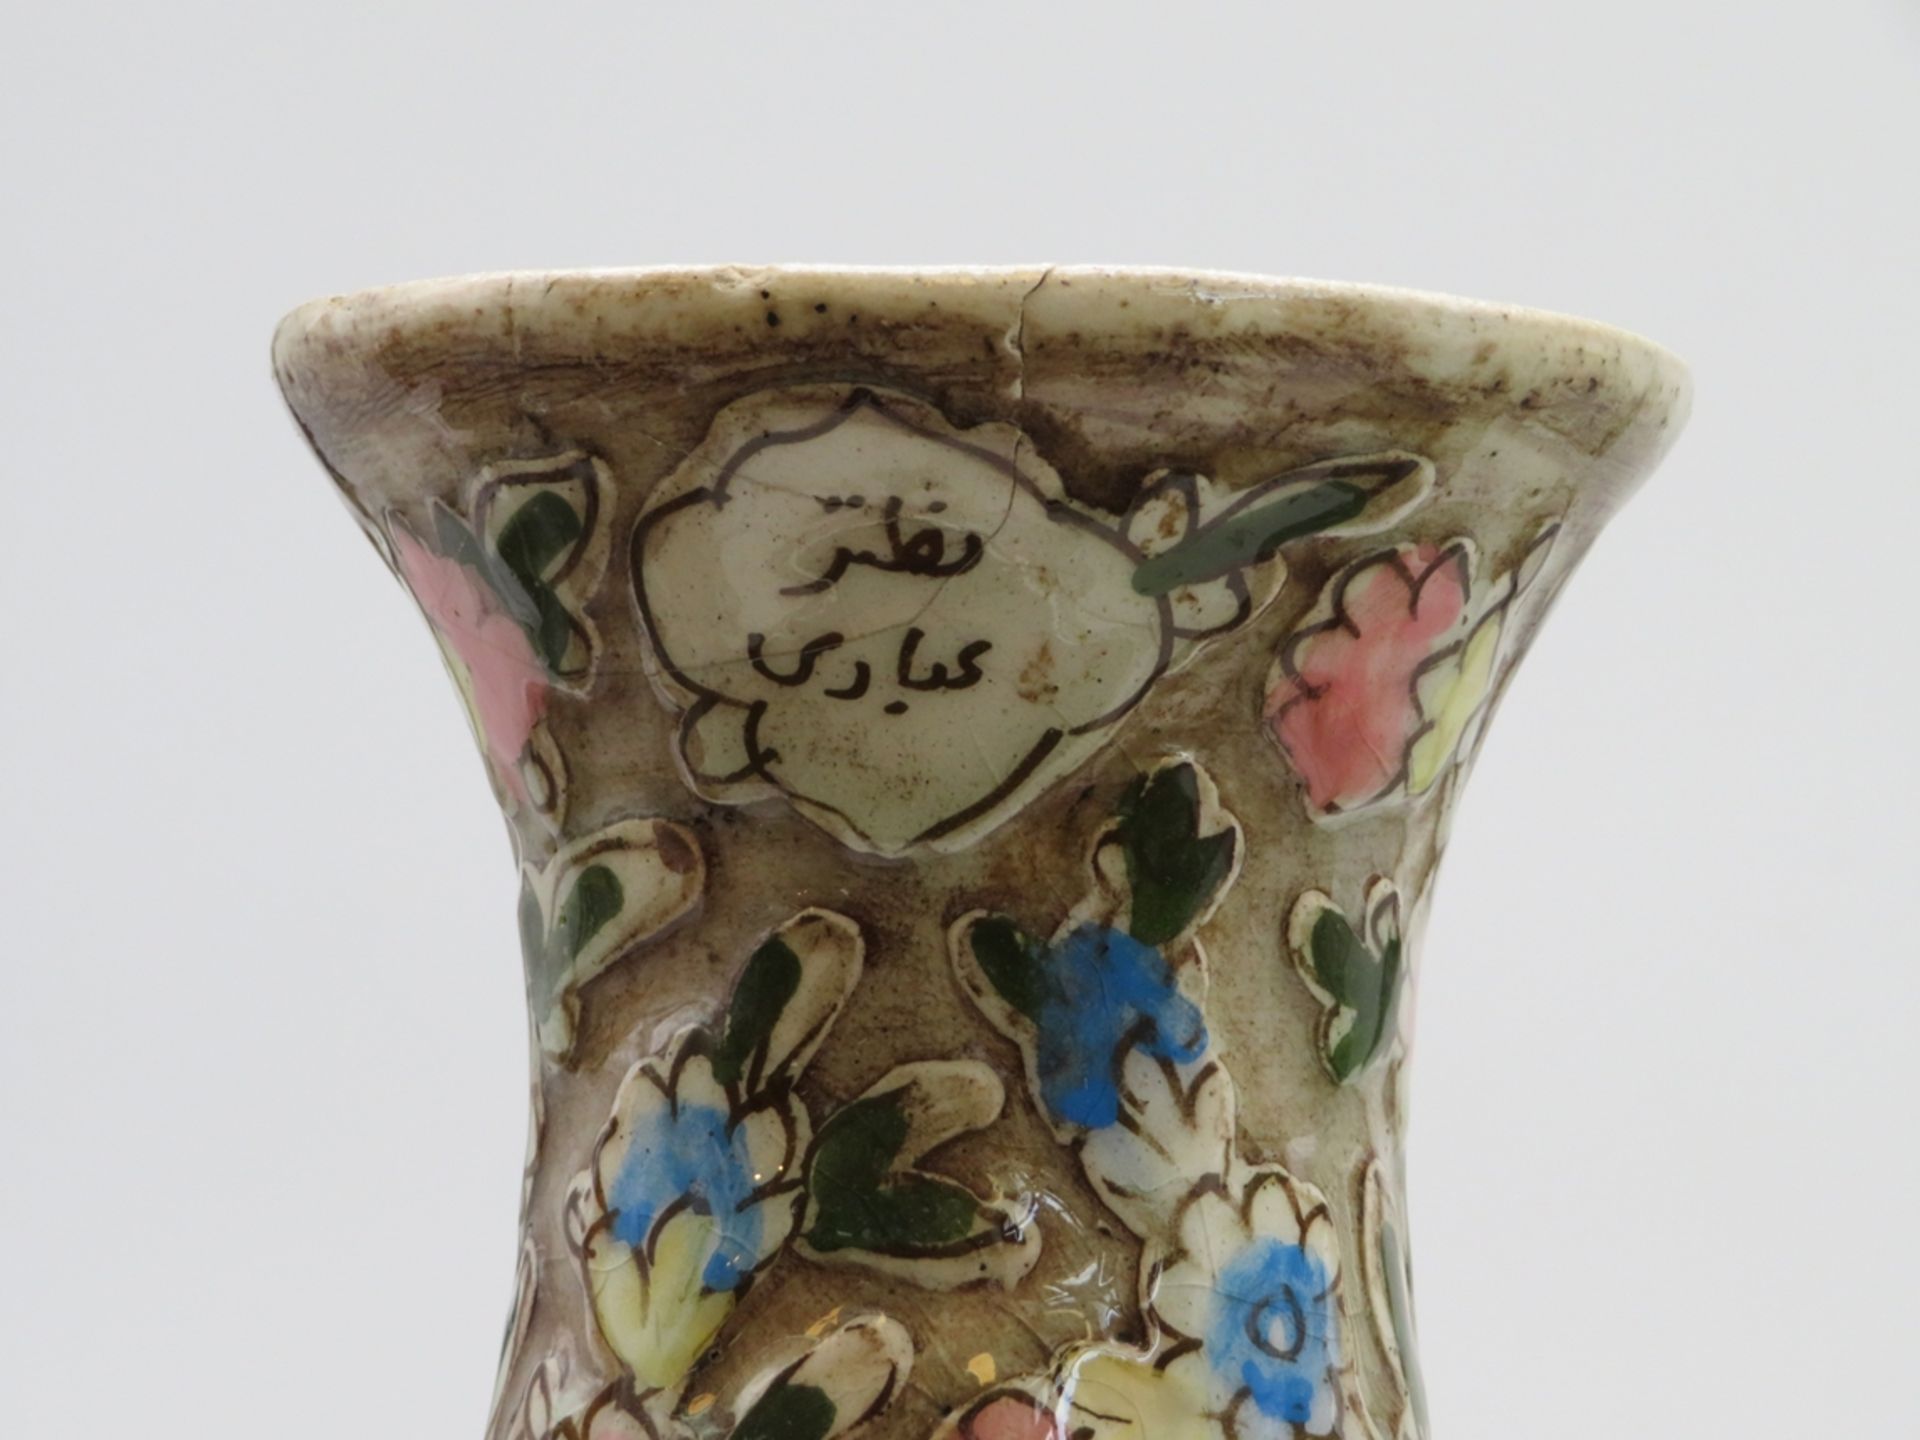 2 Vasen, Persien, antik, Fayence mit Reliefdekor von Blüten und Hasen, polychrom glasiert, 1 x am H - Bild 2 aus 3